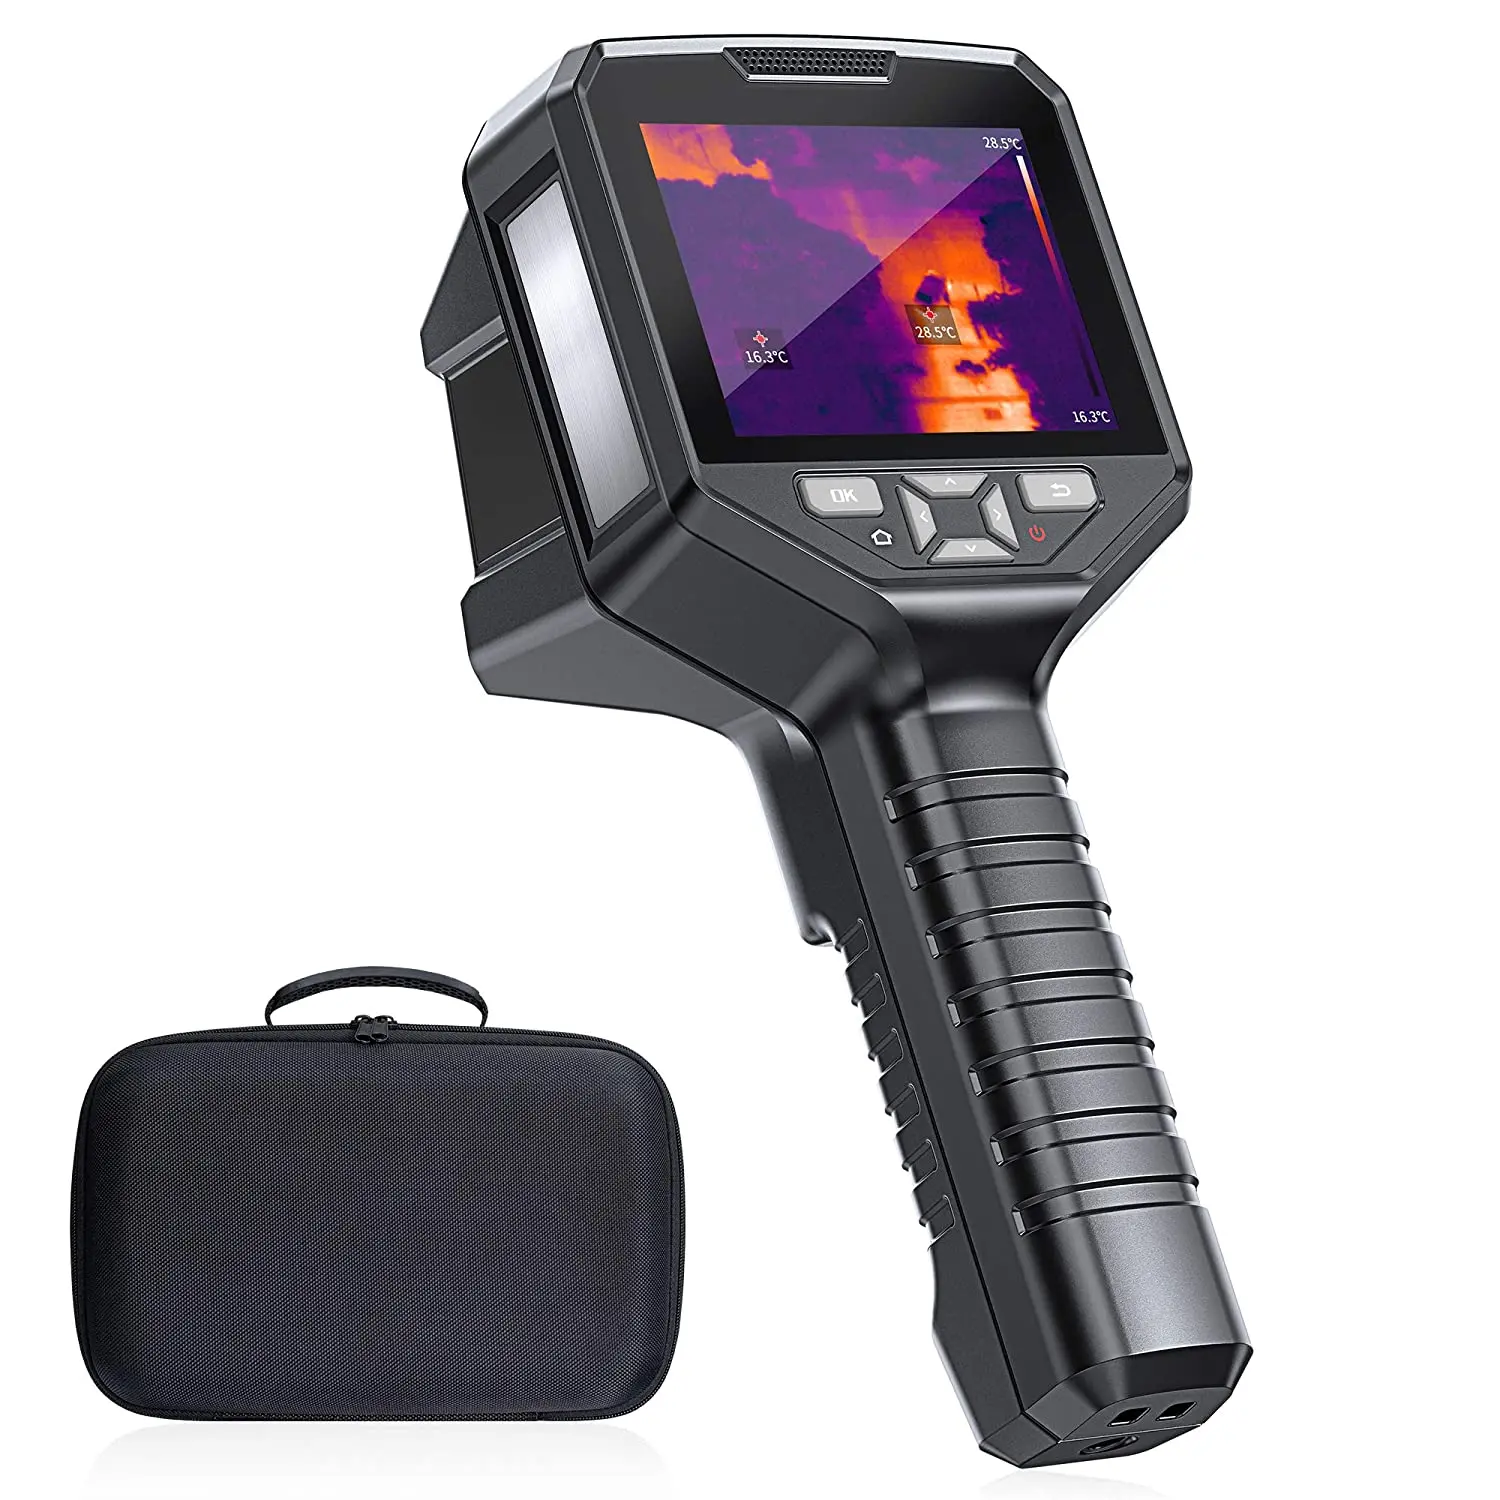 guide pc210 handheld thermal imaging camera industrial imager for repair Factory 3.5